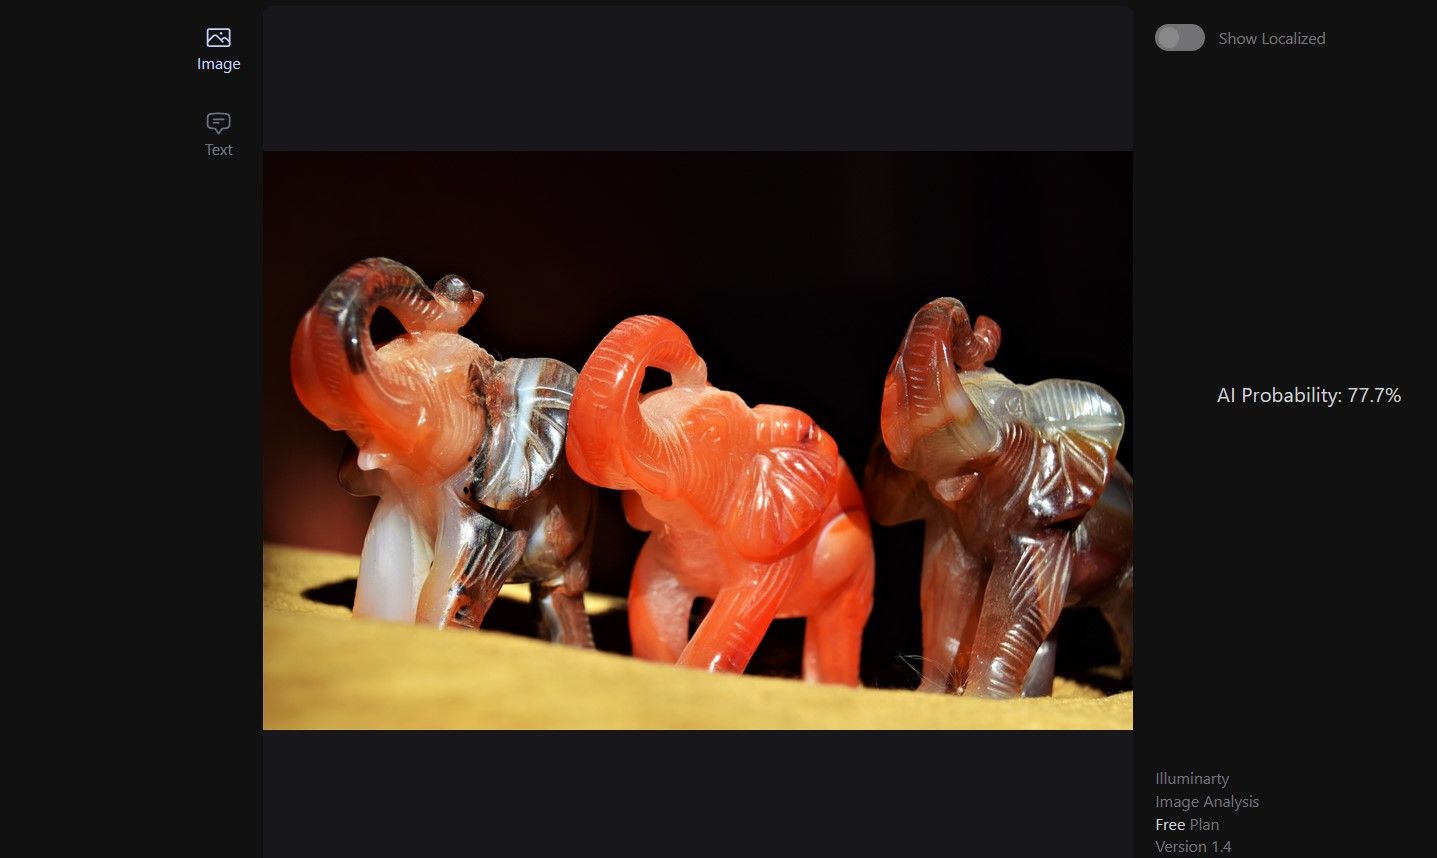 Trying Illuminarty on Human Photo of Elephant Figurines